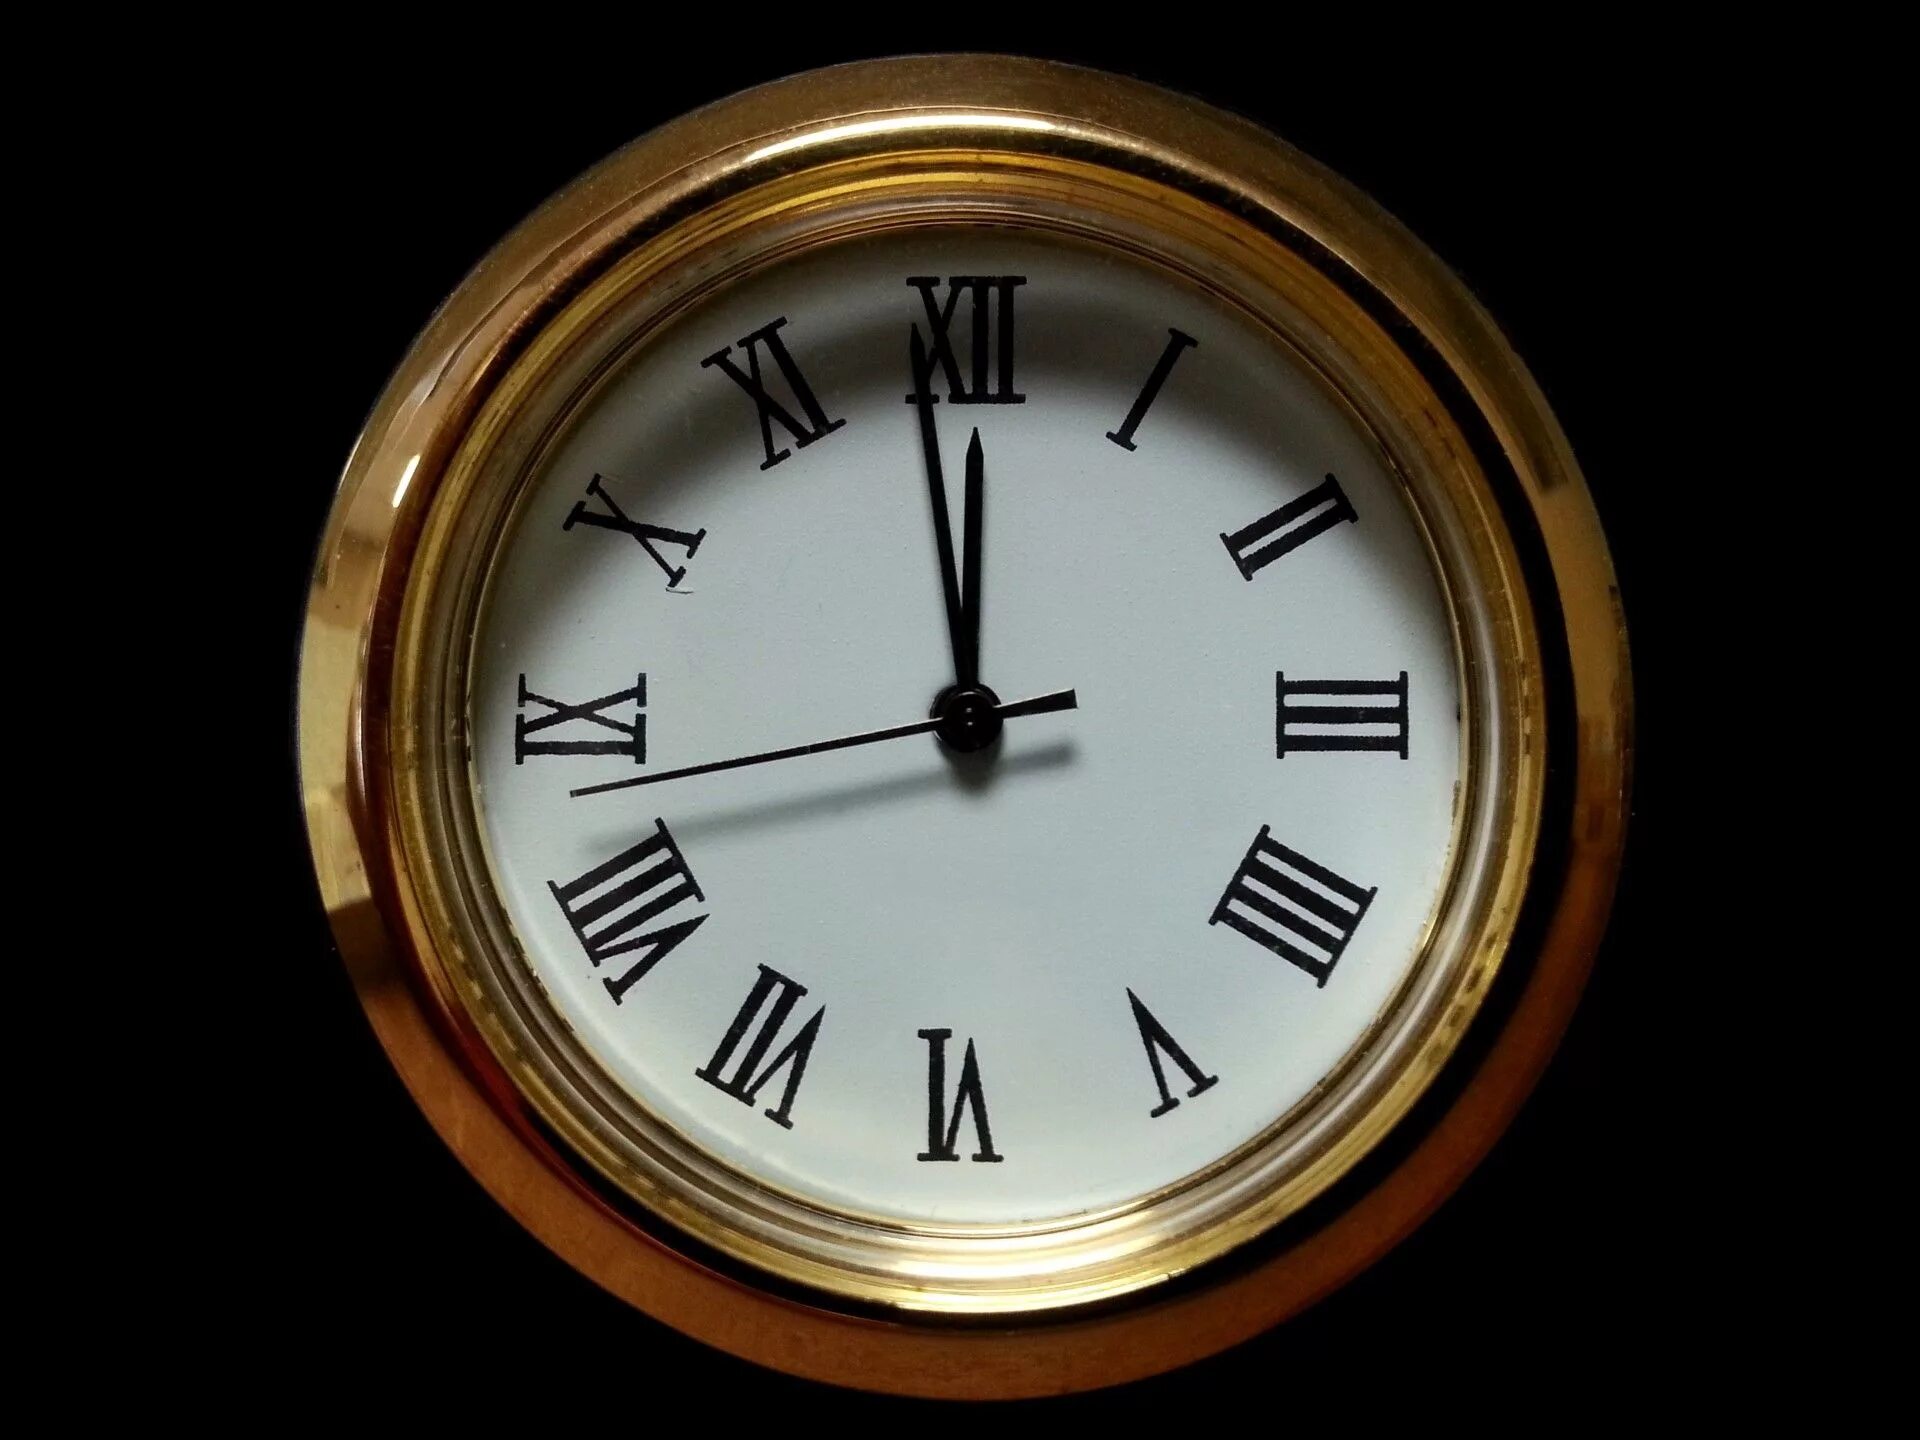 Былыя часы. Старинные часы. Часы полночь. Часы показывают полночь. Изображение часов.